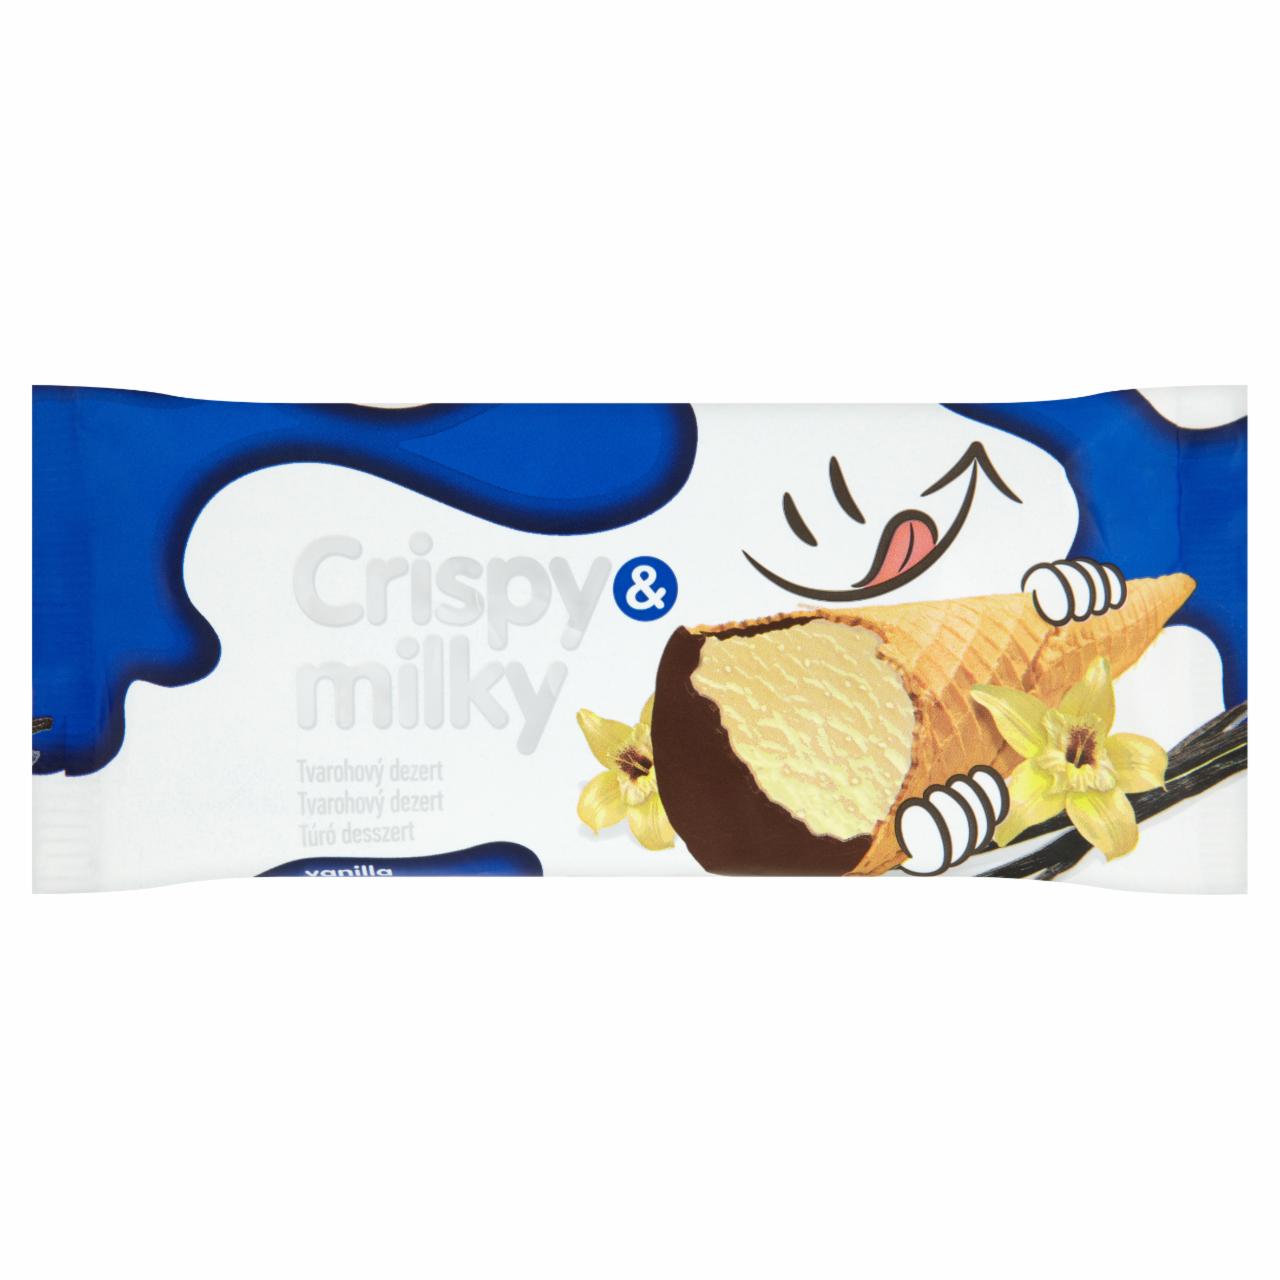 Képek - Crispy & Milky vanília ízesítésű túró desszert ostya tölcsérben 43 g